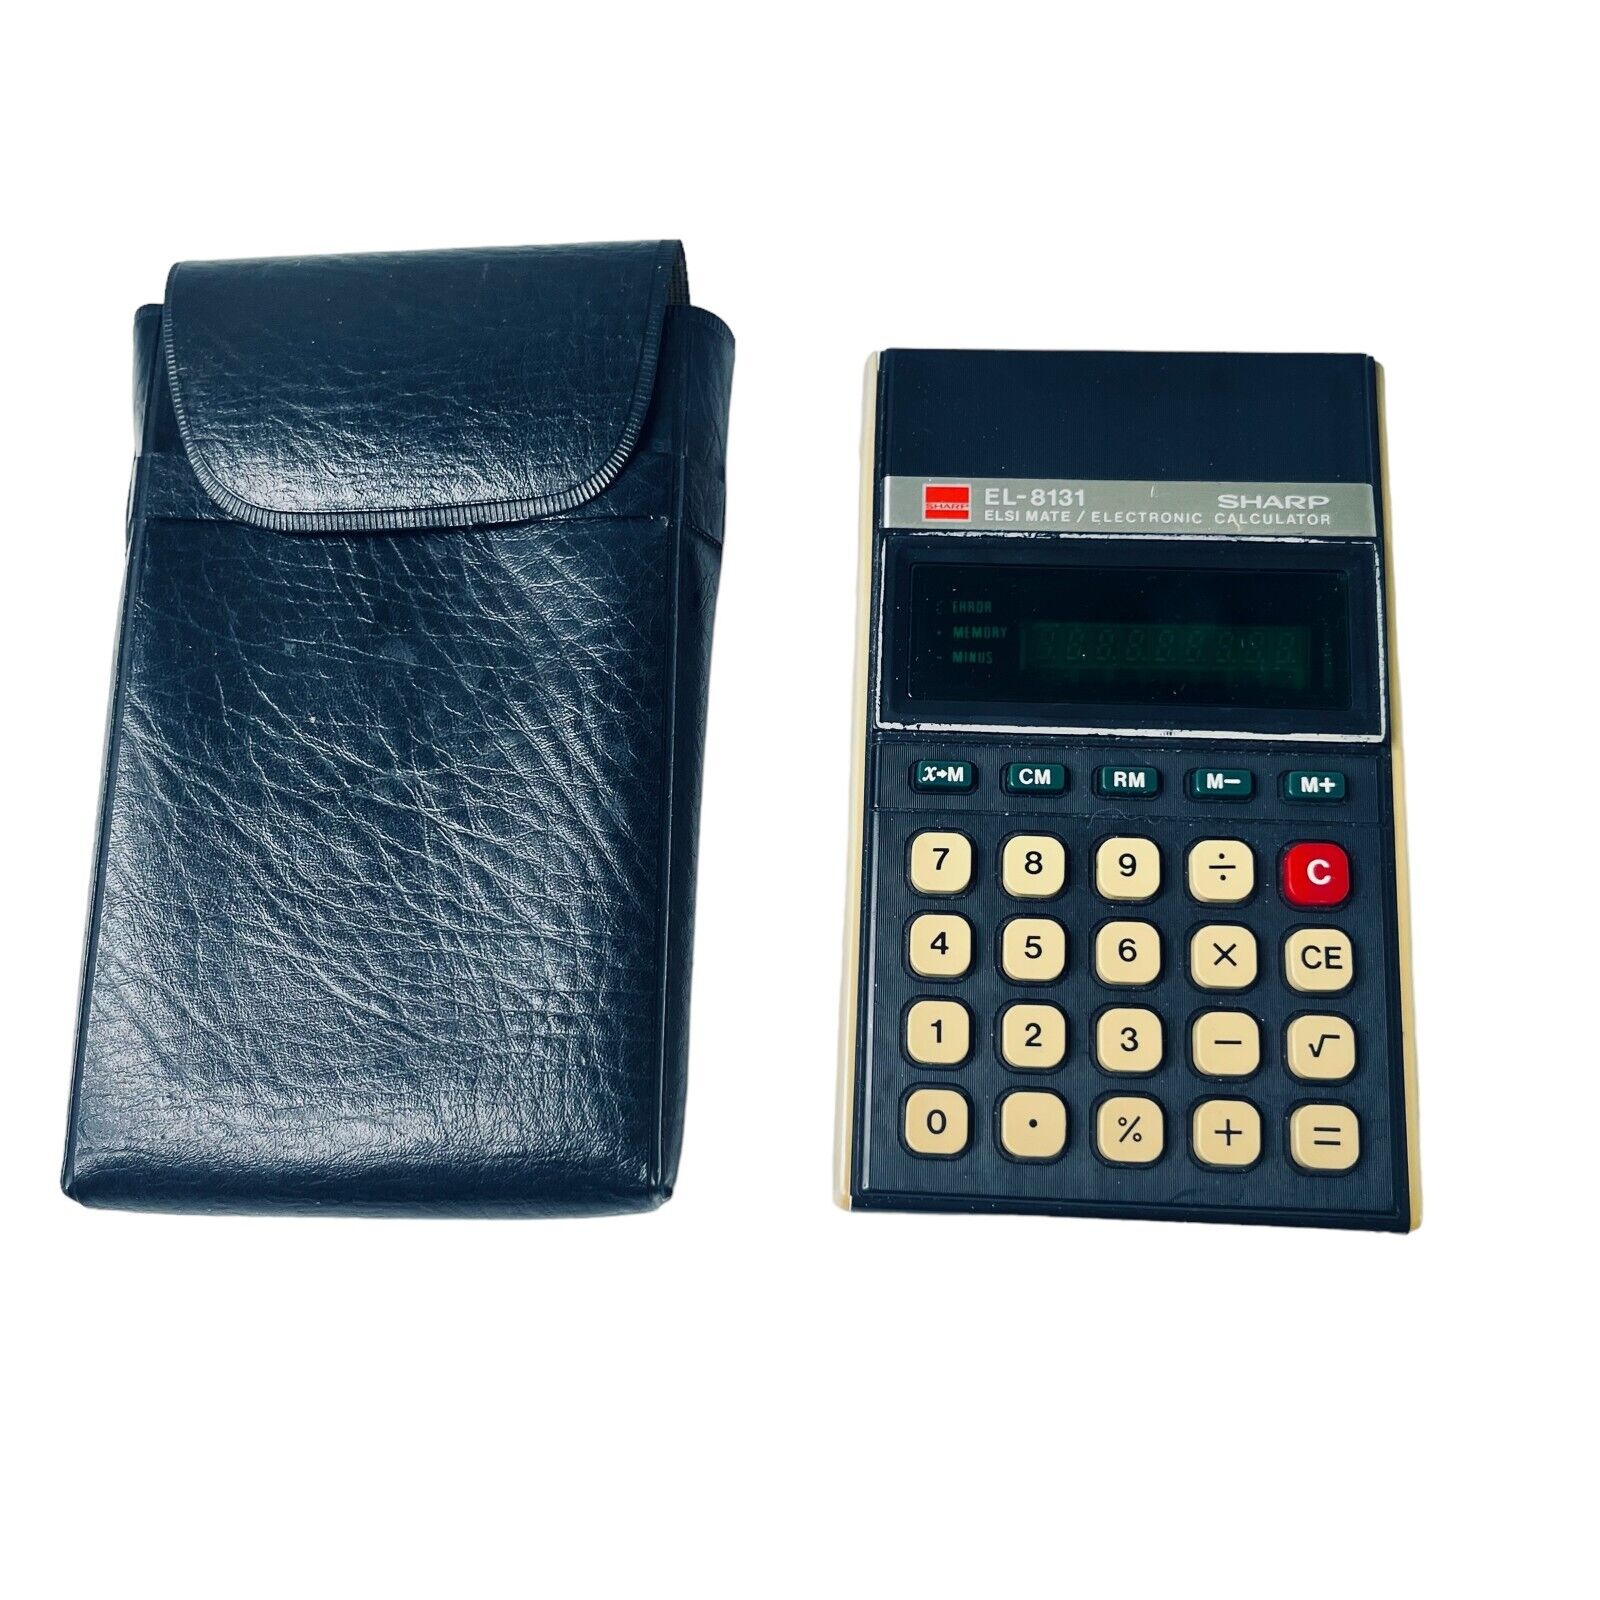 Vintage TESTED SHARP EL-8131 ELSI MATE Electronics Pocket Calculator with Case